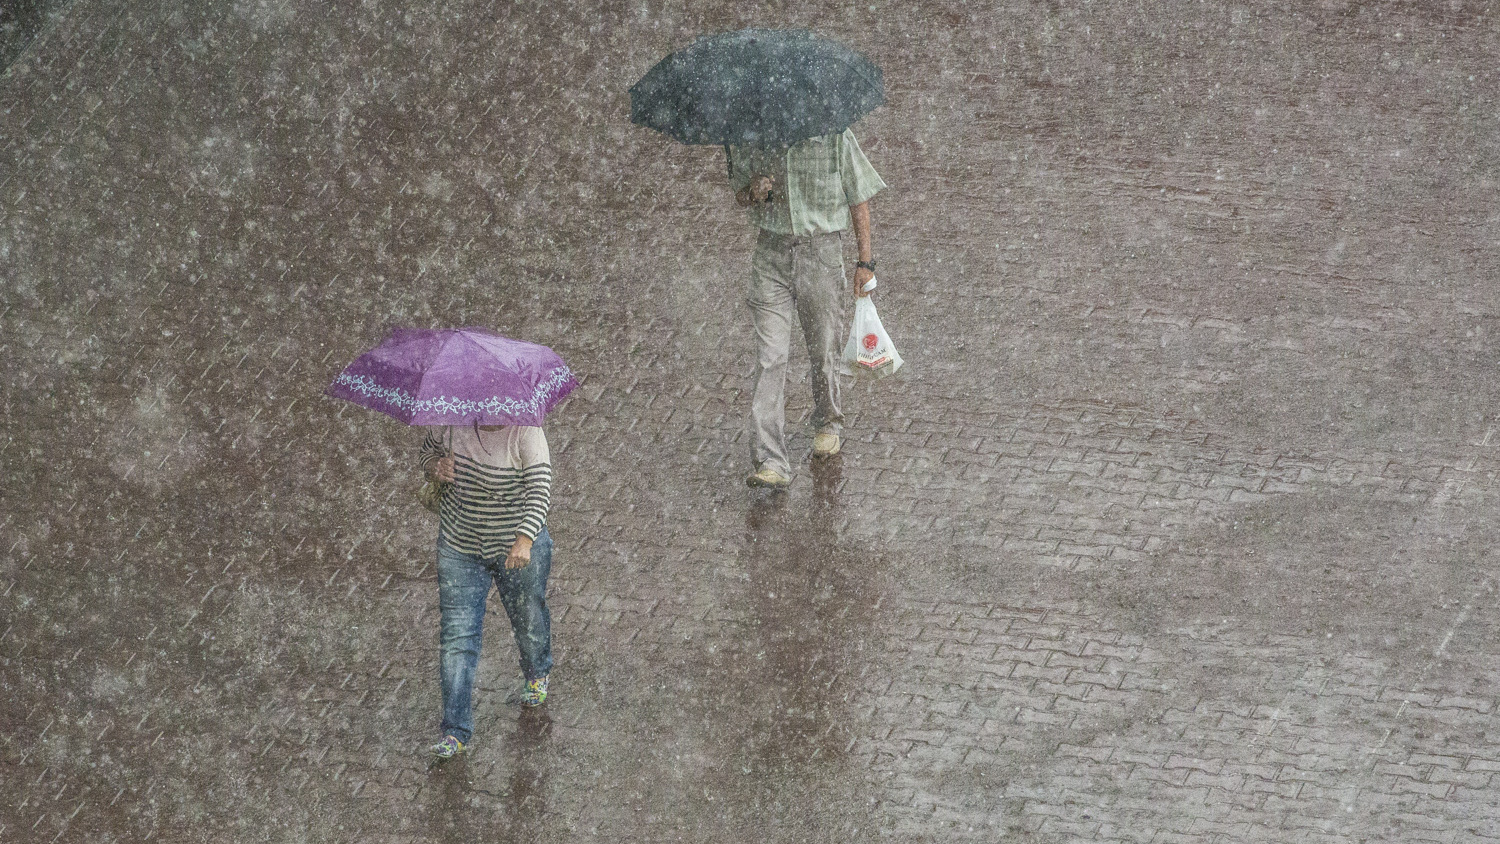 Человек из Новосиба шёл по улице весной. Картинки если 1 июня обещают дождь и холод. Ведь например в дождик в холод целый